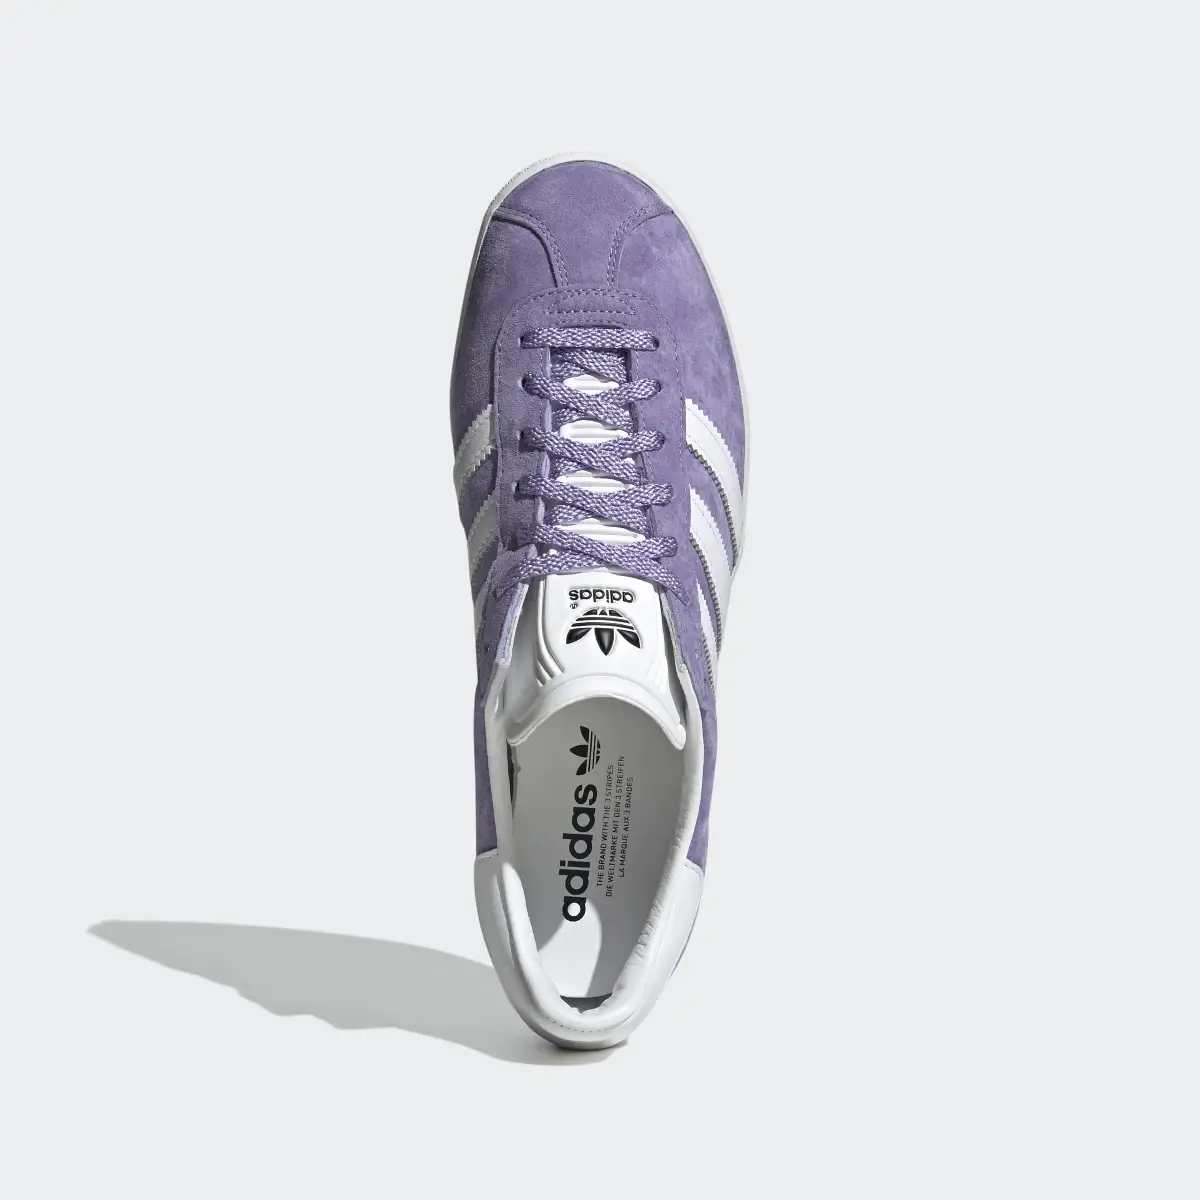 Adidas Gazelle 85 Shoes. 3